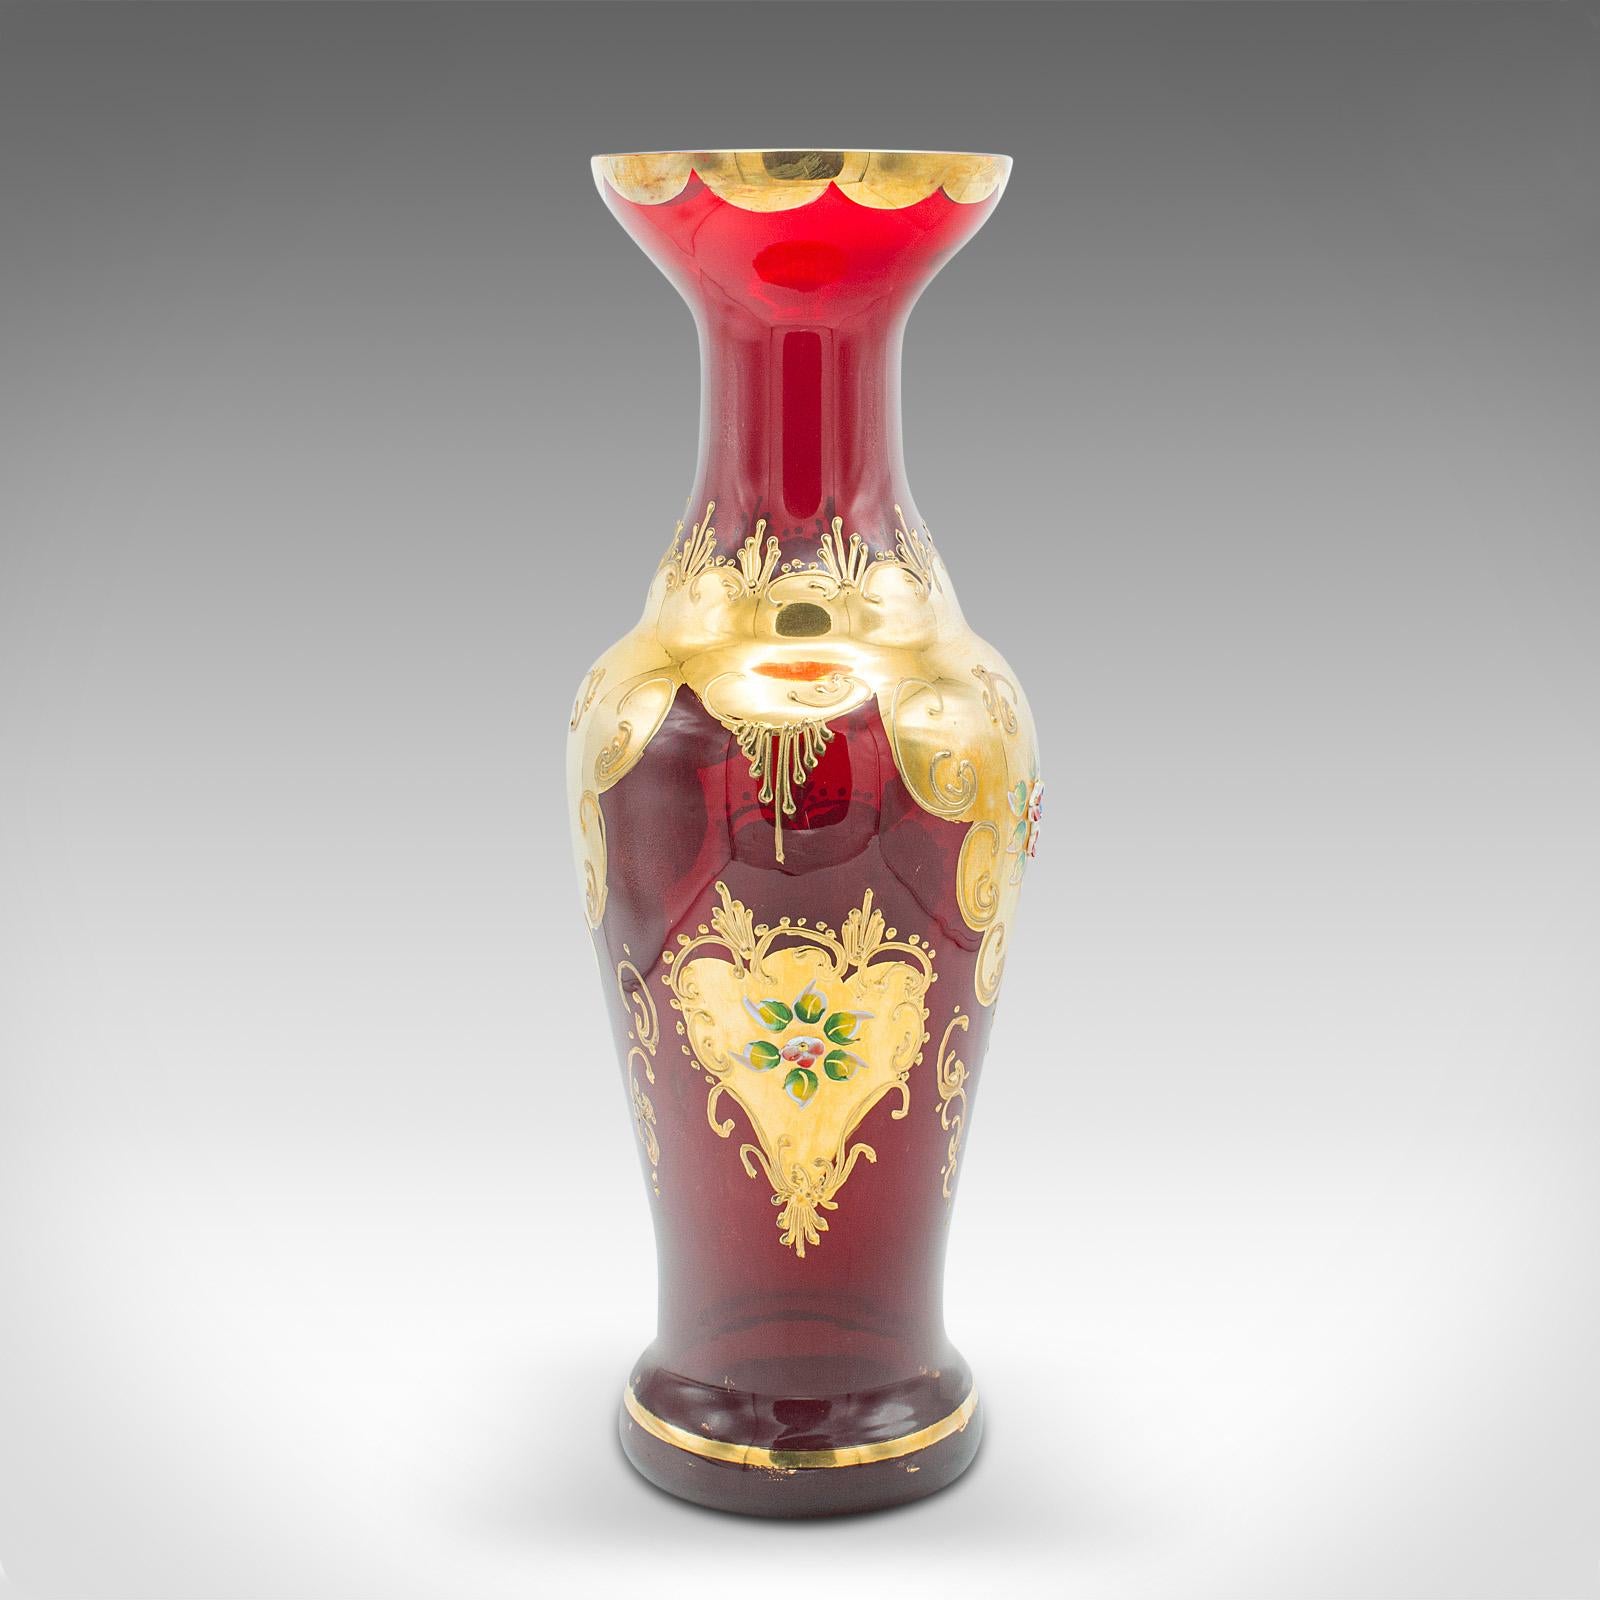 Neoclassical Revival Vintage Venetian Show Vase, Italian Art Glass, Gilt, Decorative Flower Urn, 1970 For Sale